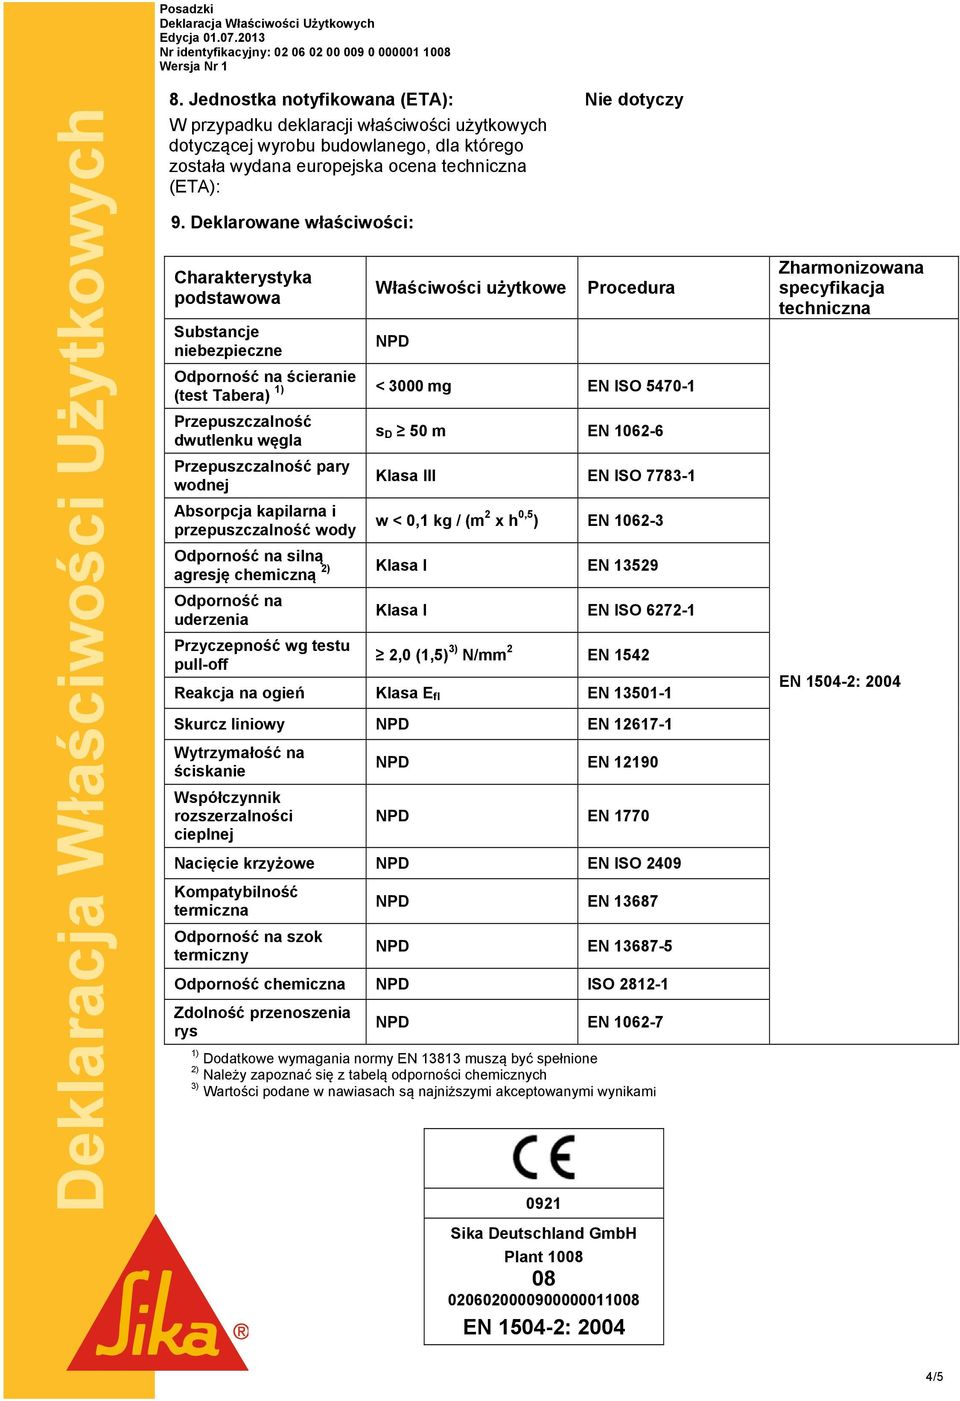 Deklarowane właściwości: Charakterystyka podstawowa Substancje niebezpieczne Właściwości użytkowe NPD Nie dotyczy Procedura Odporność na ścieranie 1) < 3000 mg EN ISO 5470-1 (test Tabera)